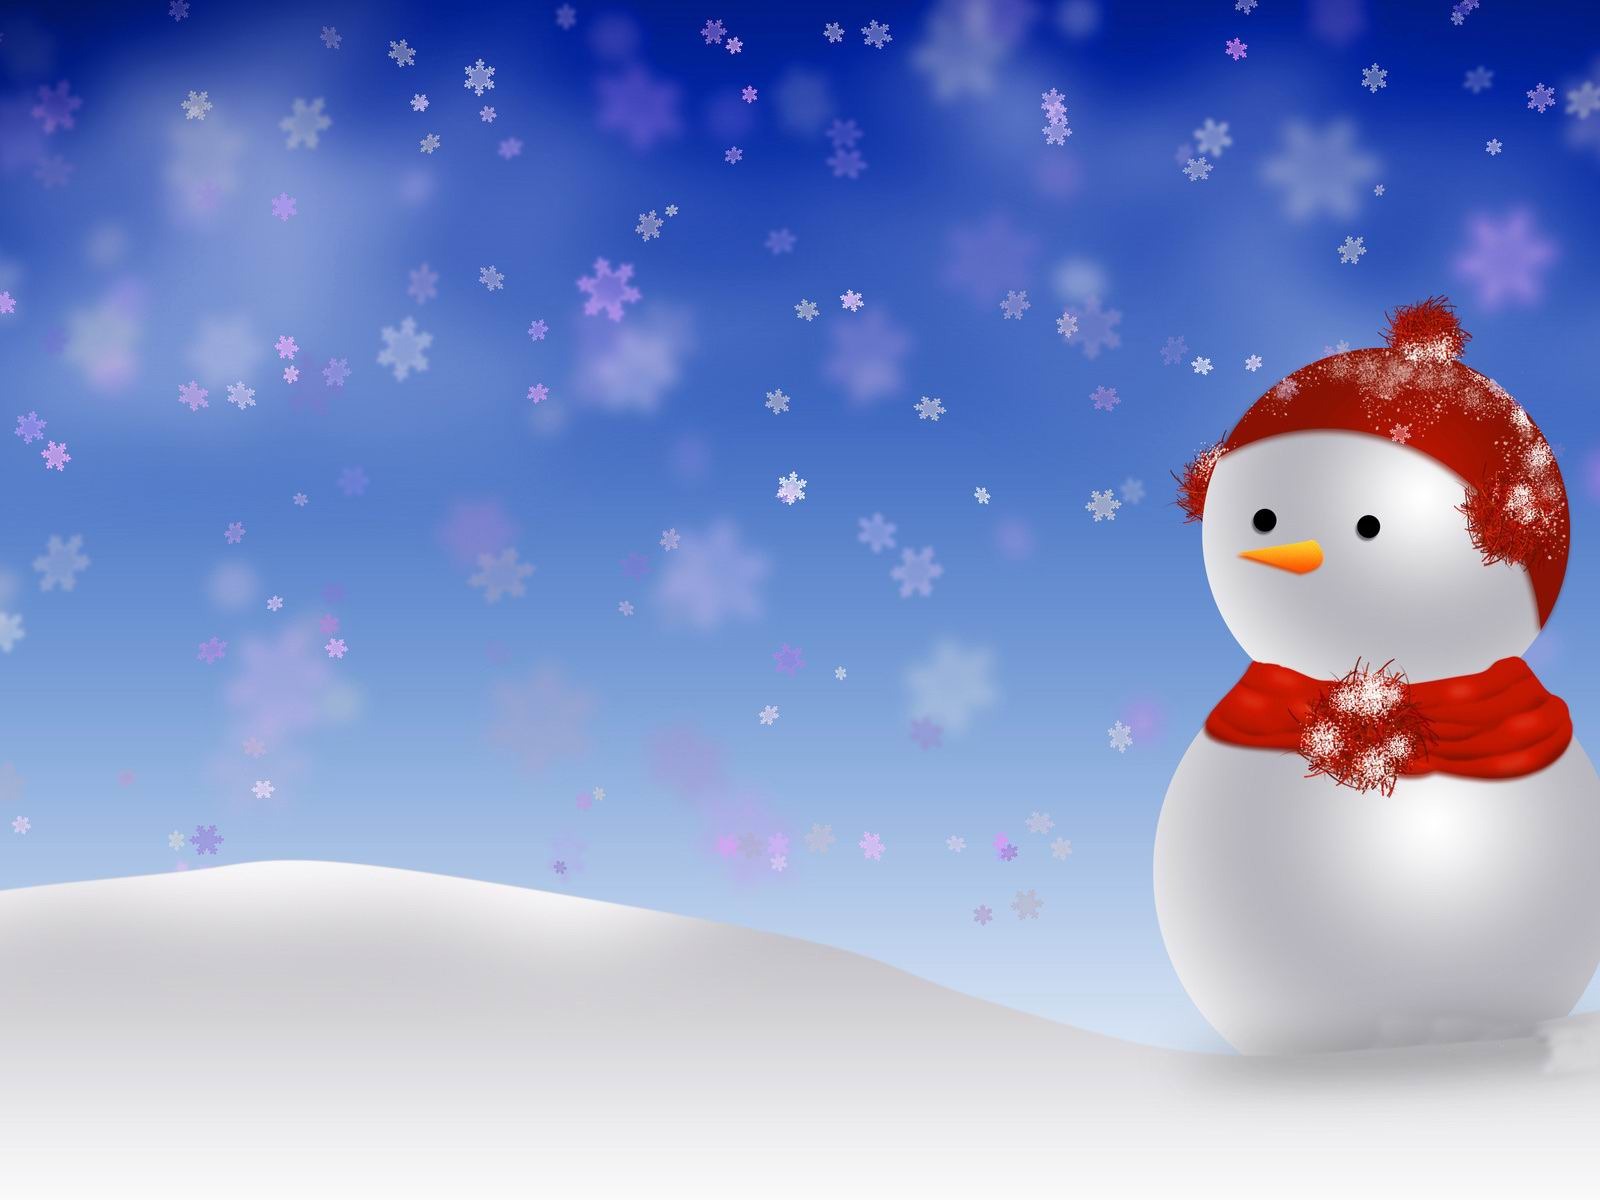 cute snowman wallpaper,snowman,sky,snow,winter,fictional character